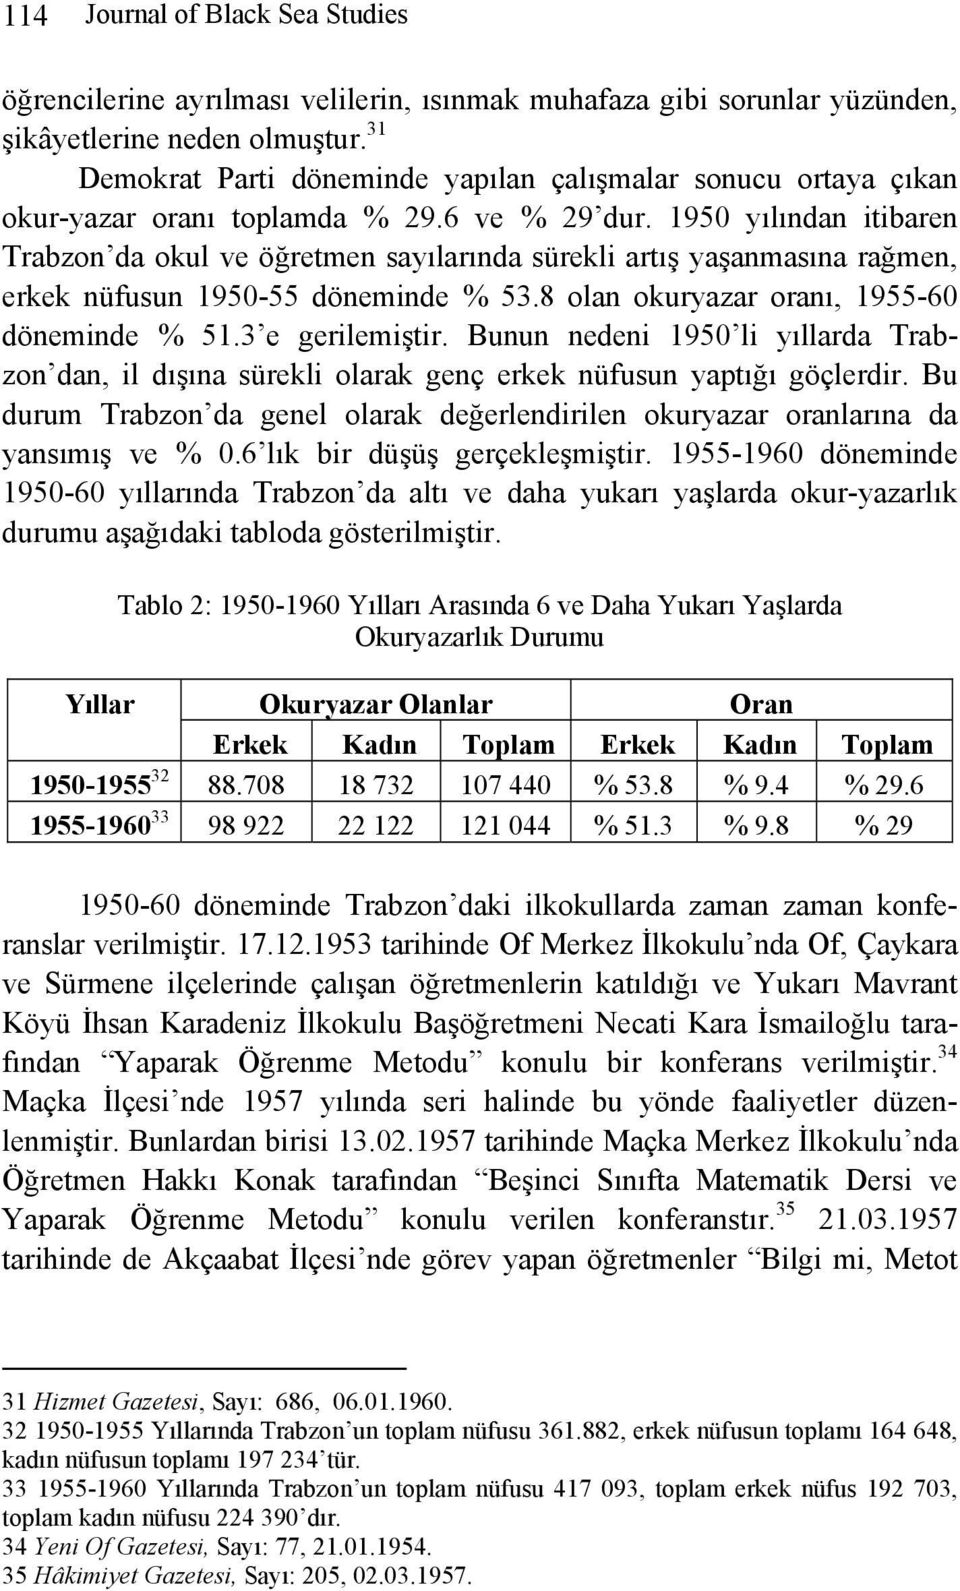 1950 yılından itibaren Trabzon da okul ve öğretmen sayılarında sürekli artış yaşanmasına rağmen, erkek nüfusun 1950-55 döneminde % 53.8 olan okuryazar oranı, 1955-60 döneminde % 51.3 e gerilemiştir.